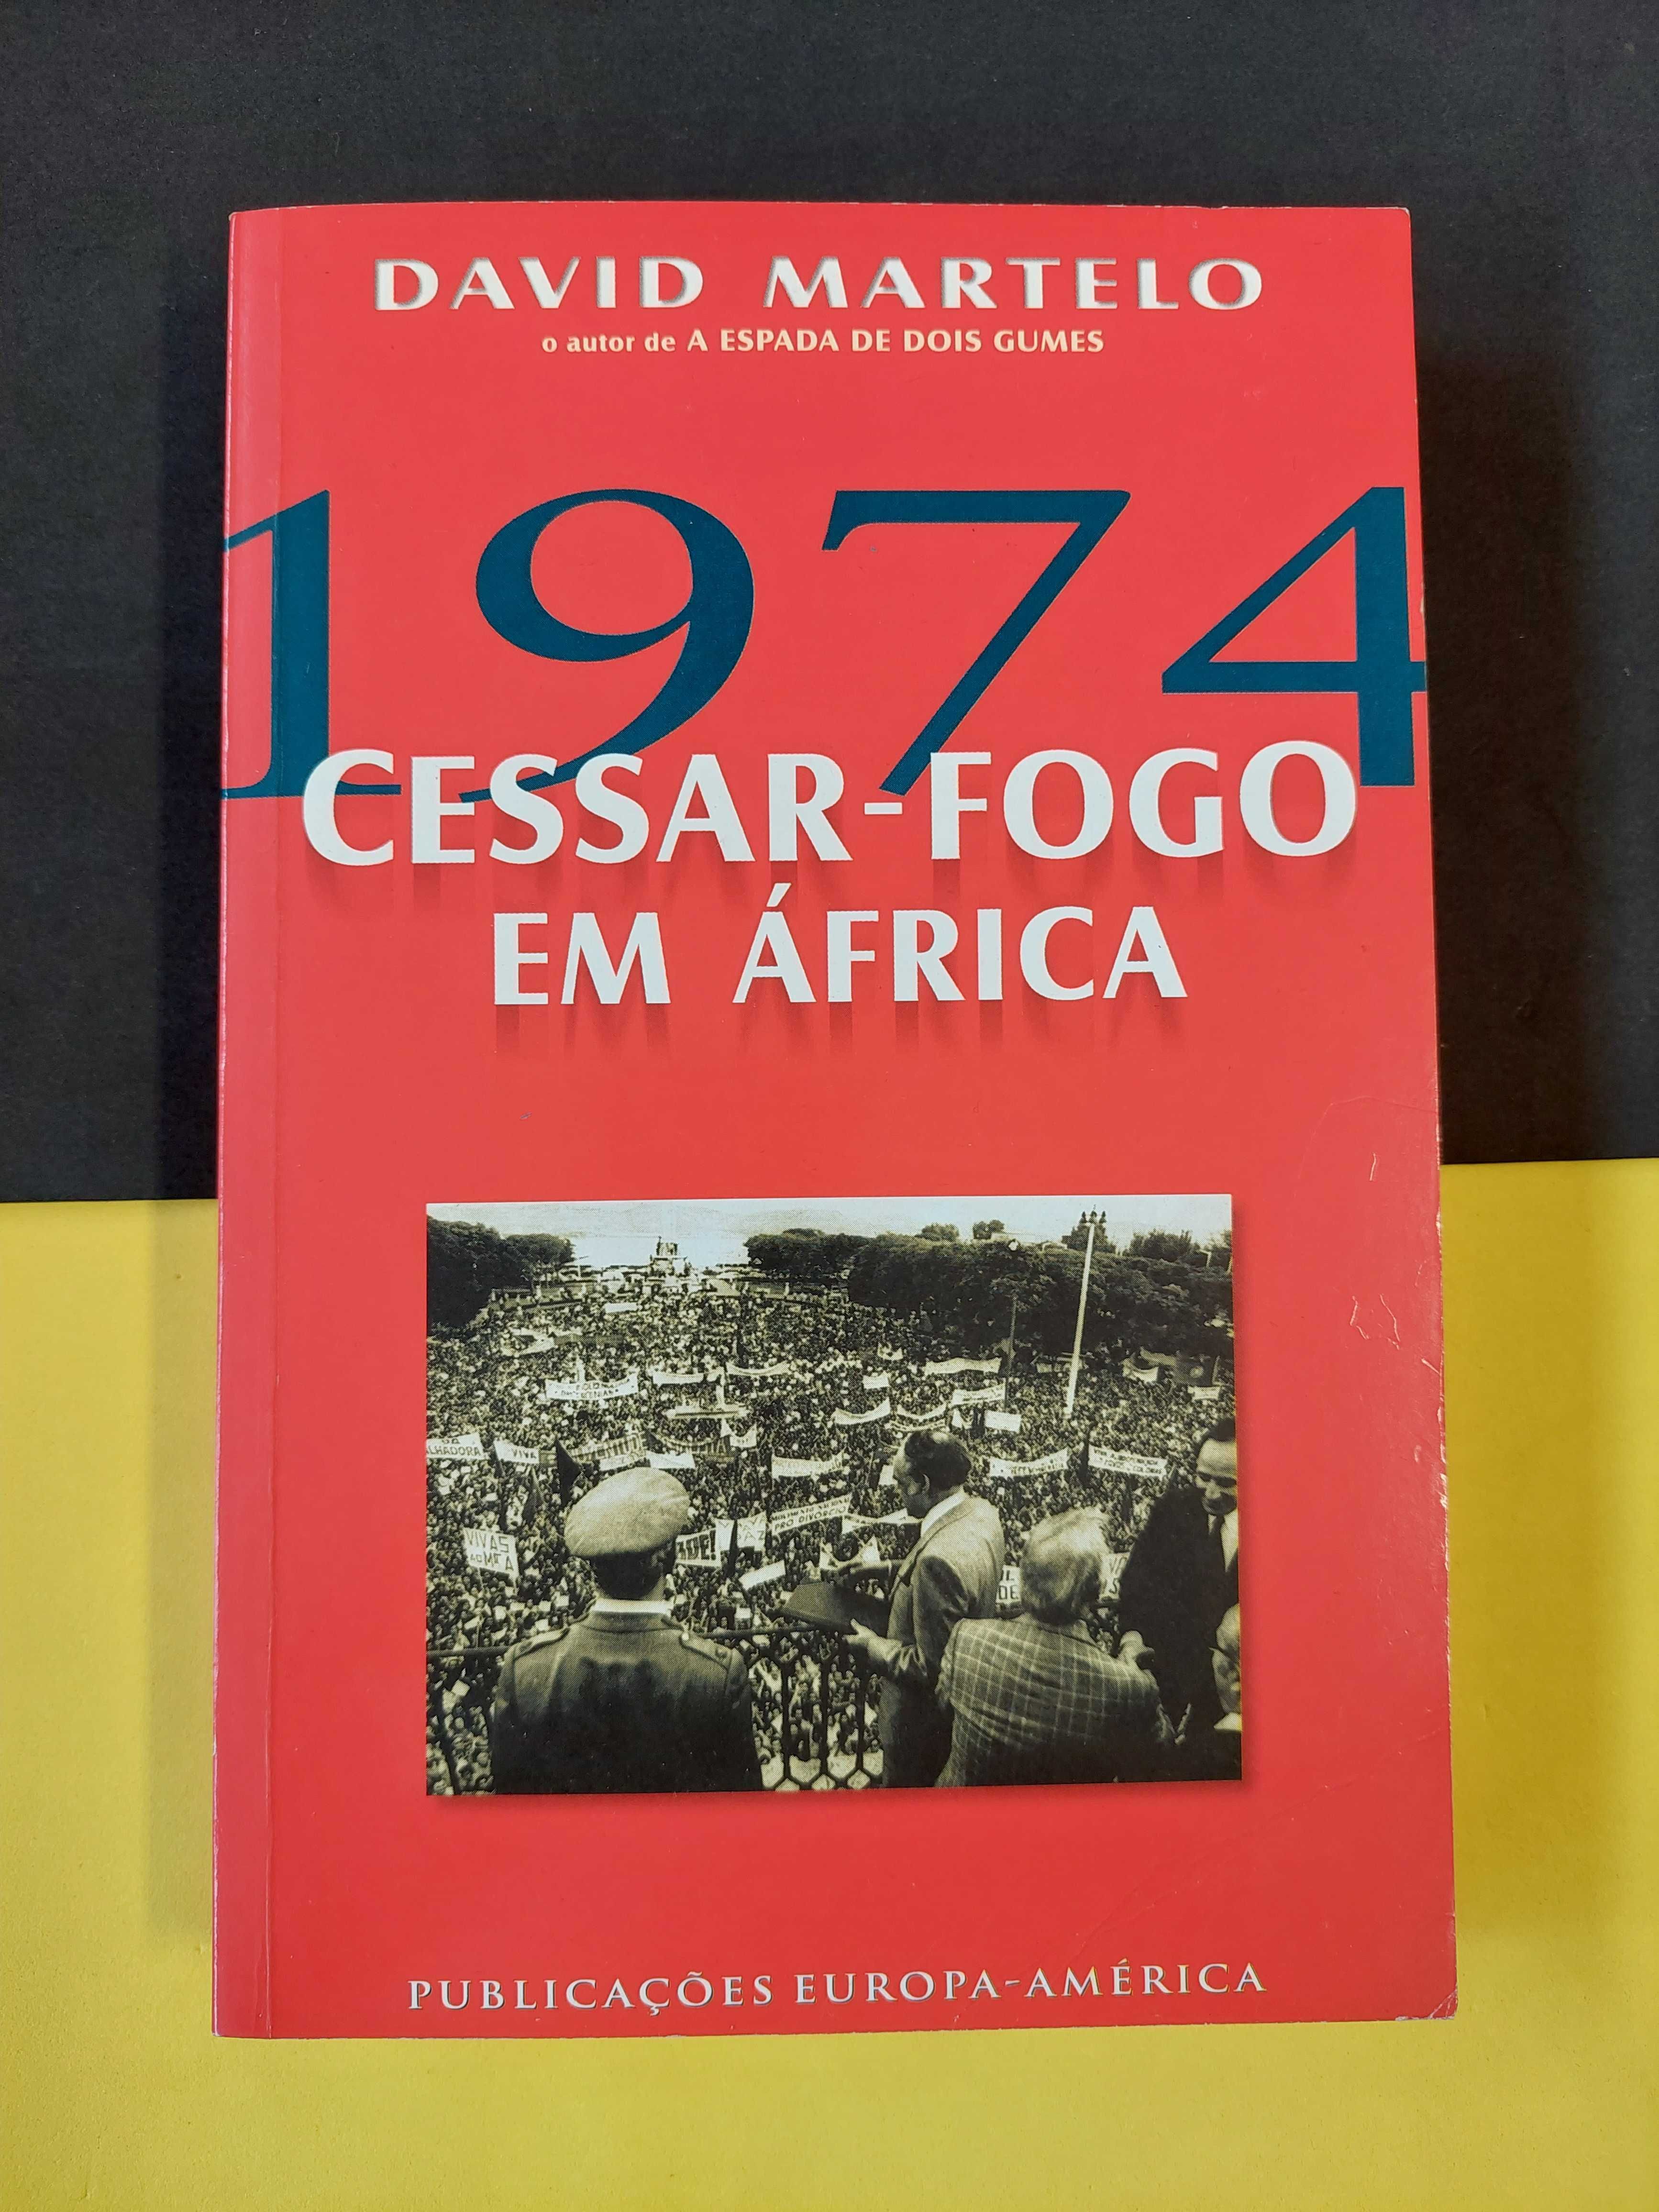 David Martelo - 1974 Cessar-fogo em África